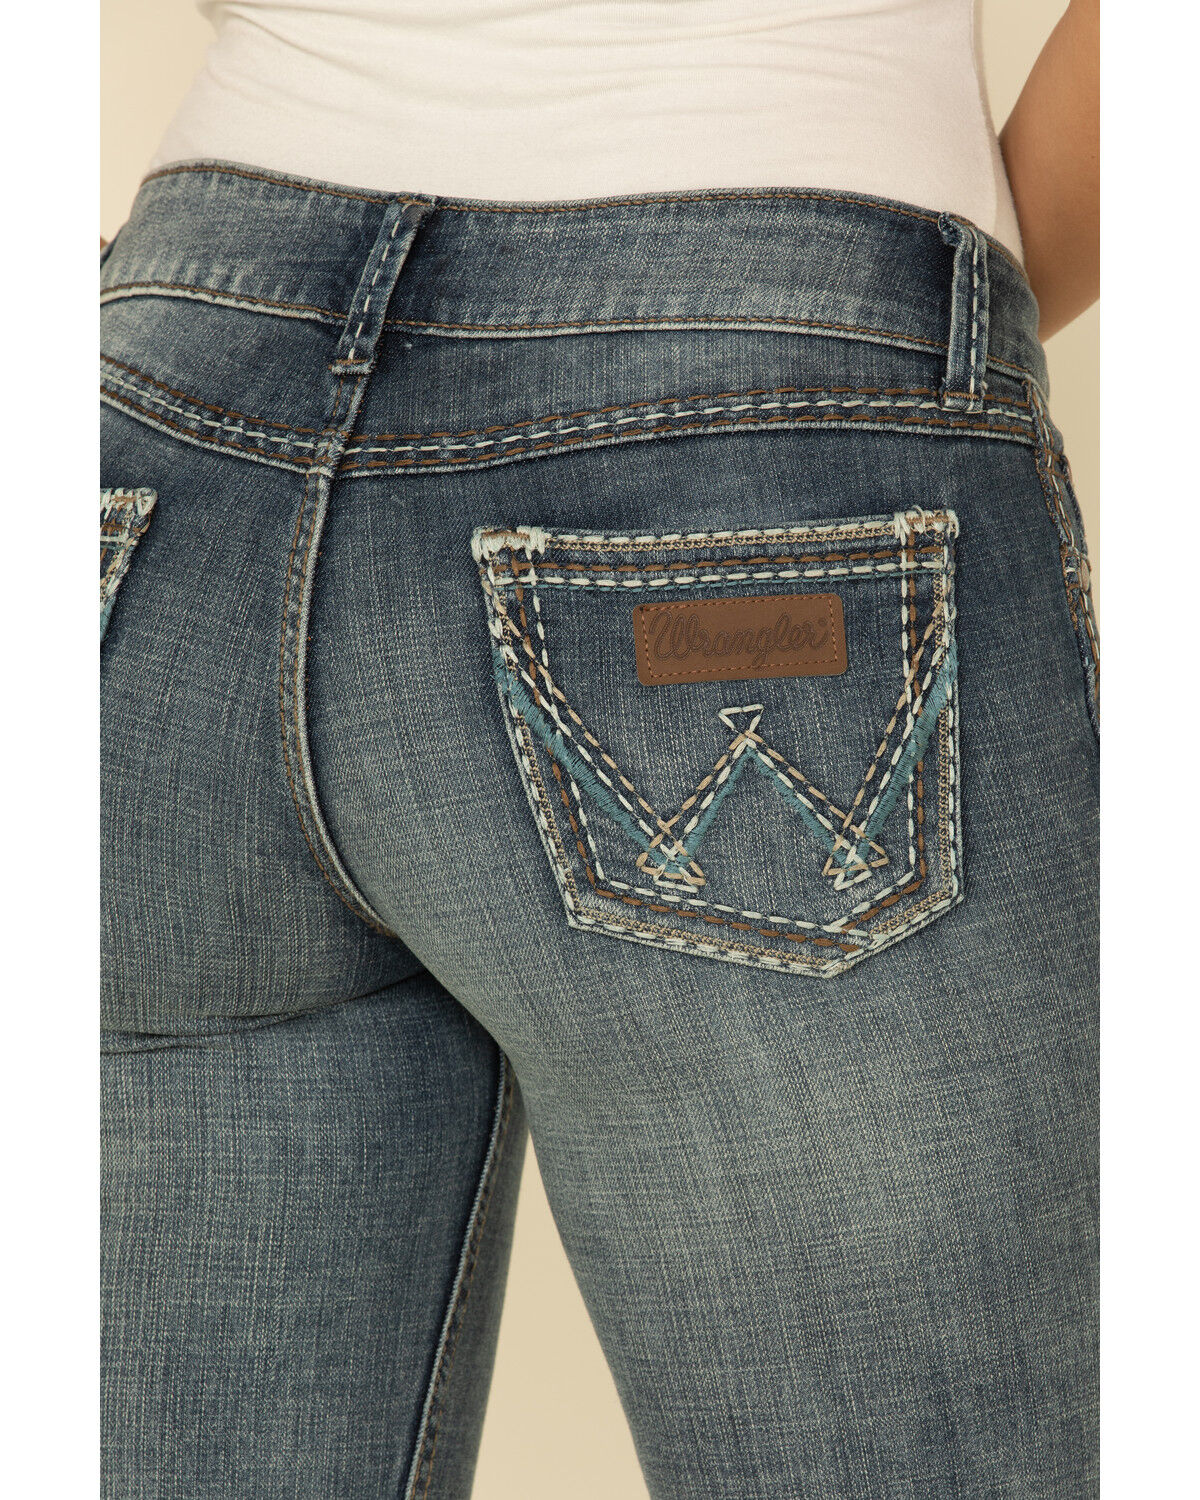 Wrangler Retro Women's Indigo Pocket 